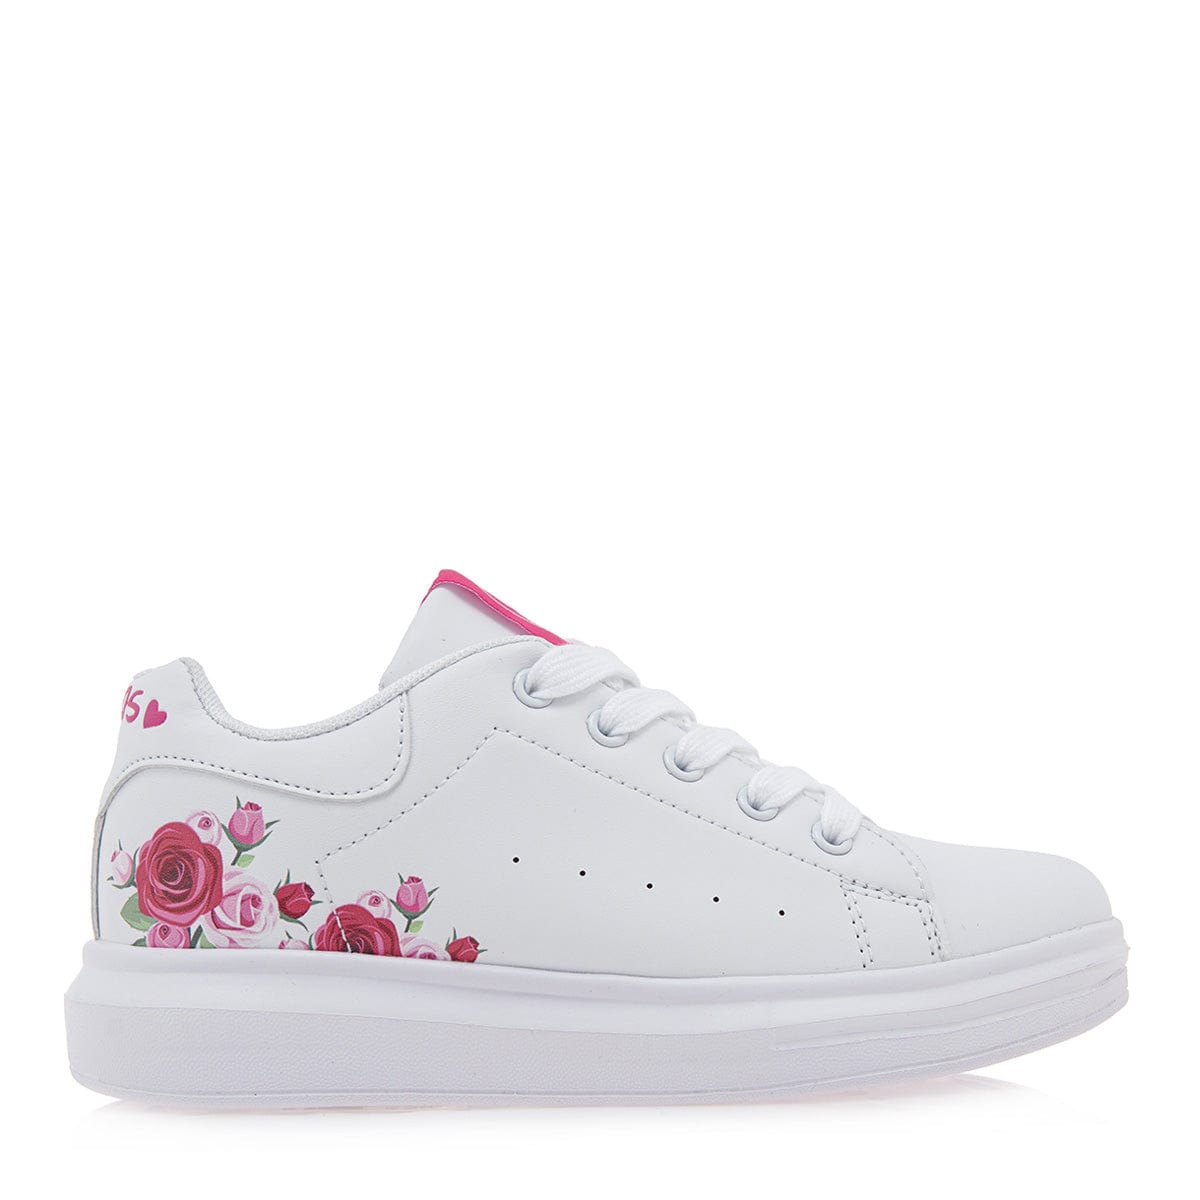 Exe kids sneakers λευκό λουλούδι φούξια/ κορδόνι  423-La Scarpa Shoes Exe kids sneakers λευκό λουλούδι φούξια/ κορδόνι  423 GIRLS EXE KIDS